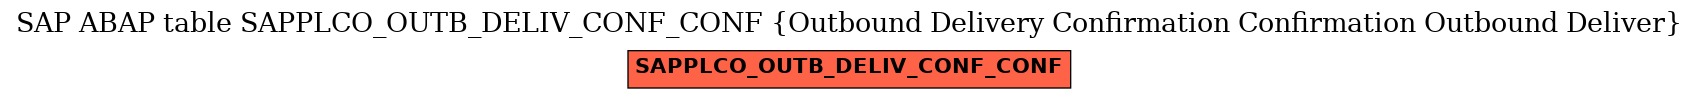 E-R Diagram for table SAPPLCO_OUTB_DELIV_CONF_CONF (Outbound Delivery Confirmation Confirmation Outbound Deliver)